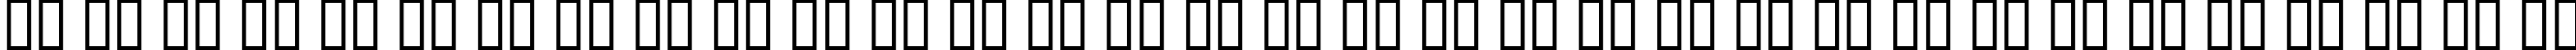 Пример написания русского алфавита шрифтом Colchester Black